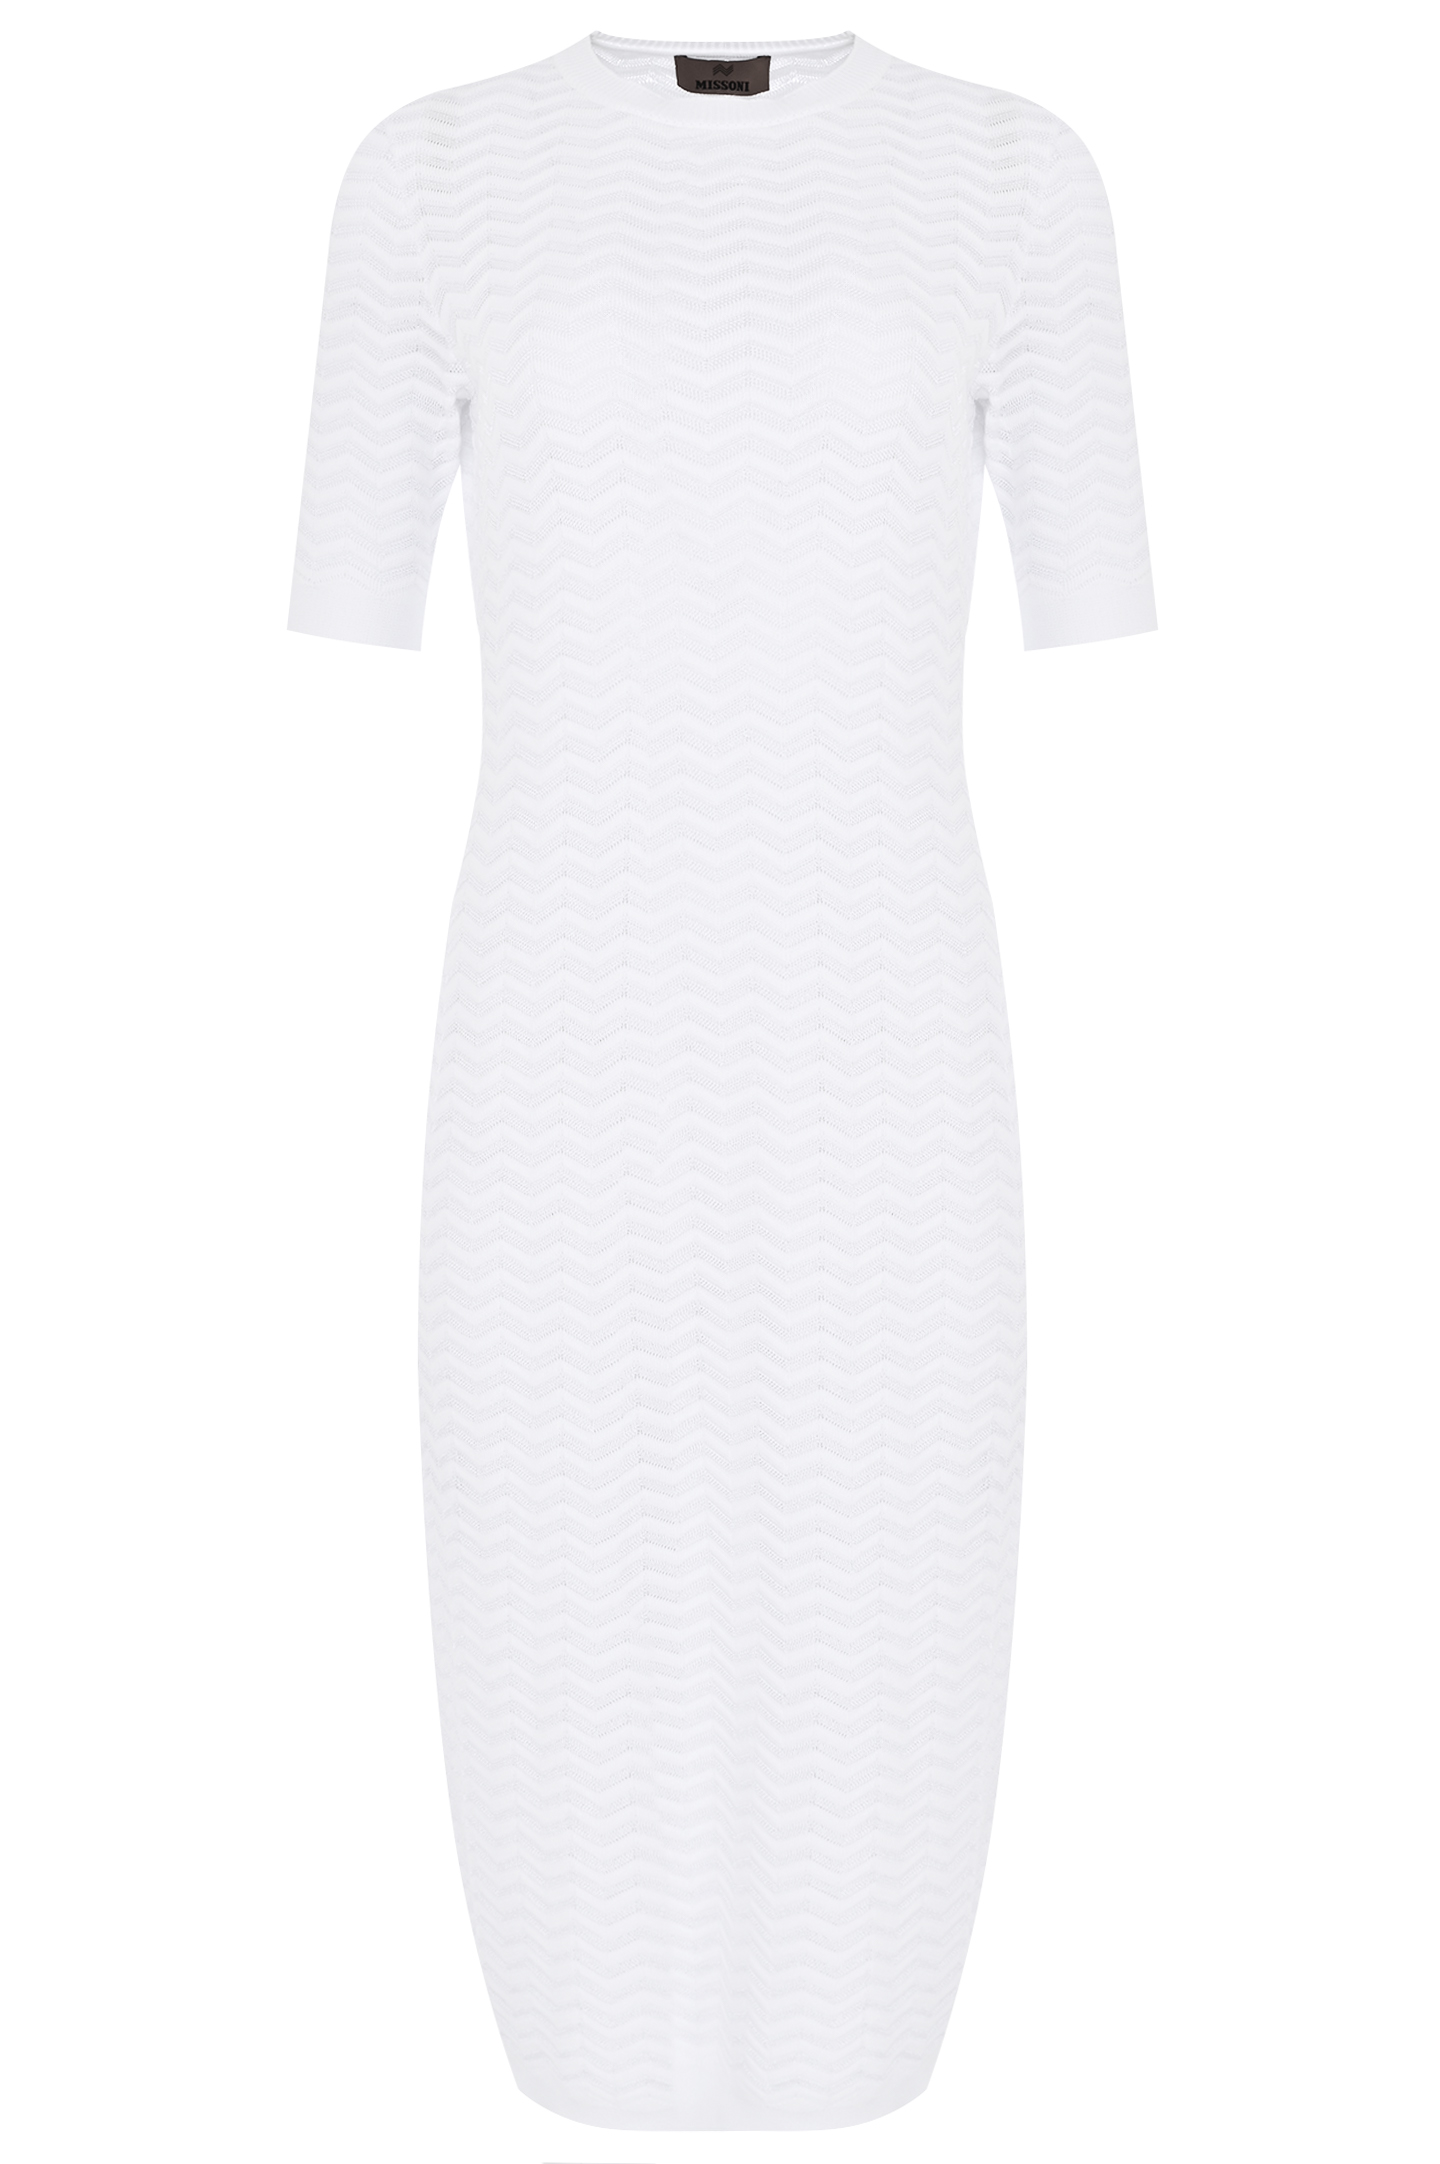 Платье из хлопка и вискозы MISSONI DS24SG2D-BK033W, цвет: Белый, Женский